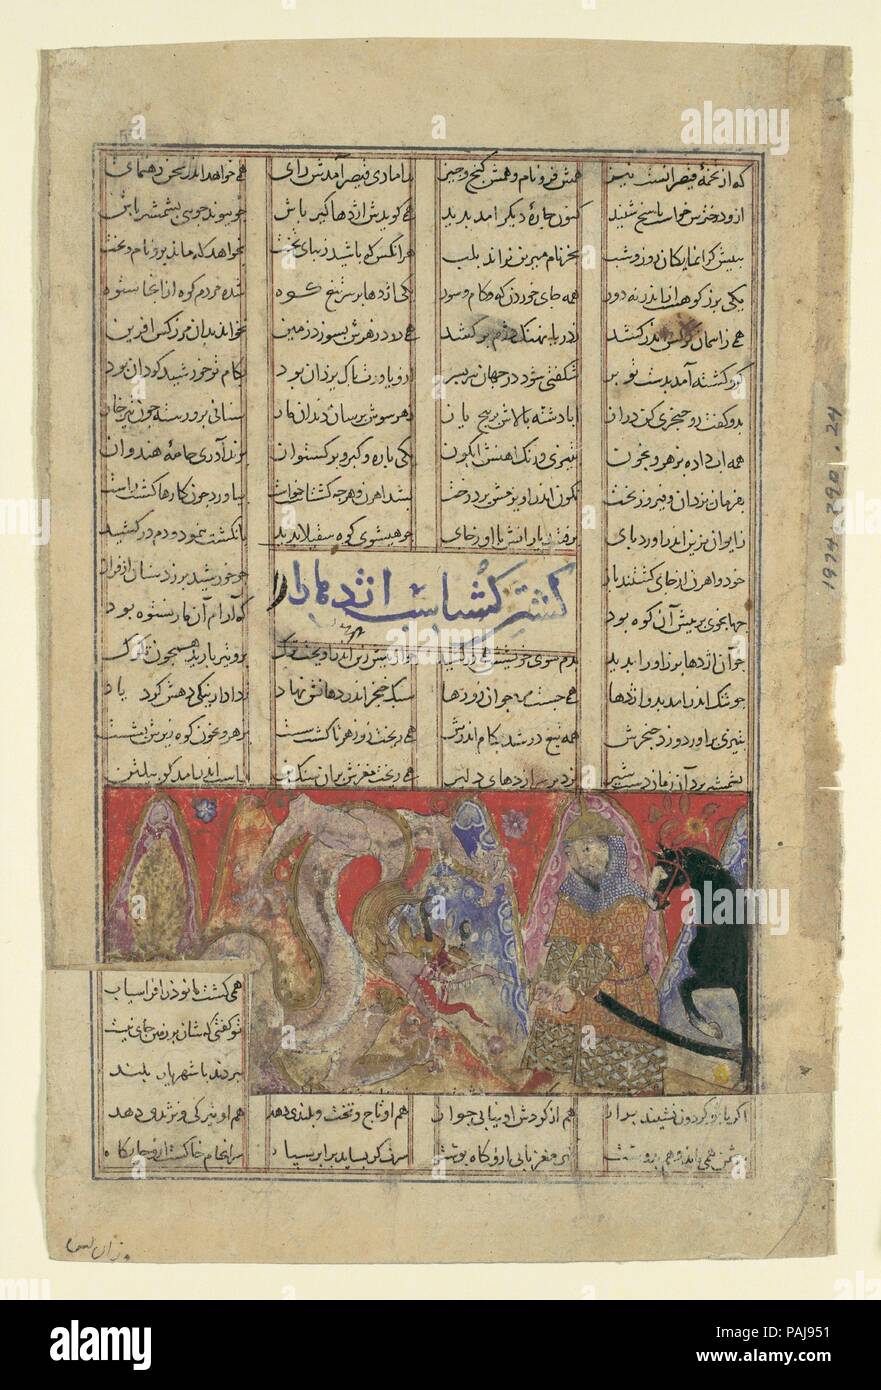 Gushtasp 'tue le dragon du mont Saqila', folio d'un Shahnama (Livre des Rois) de Firdausi. Auteur : Abu'l Qasim Firdausi (935-1020). Dimensions : Page : 8 x 5 1/4 in. (20,3 x 13,3 cm) Peinture : 1 15/16 x 4 1/4 in. (5 x 10,8 cm). Date : ca. 1330-40. Gushtasp, Prince de l'Iran, a été vivant déguisé dans le rhum. Afin de gagner la main de la plus jeune fille de César qu'il a dû effectuer un puissant feat - tuer le terrible dragon du mont Saqila. Par son courage et prowess Gushtasp prévalu et a tué le monstre. Le dragon prend les deux tiers de la composition, sa forme putride exsudant pourrait et les hommes Banque D'Images